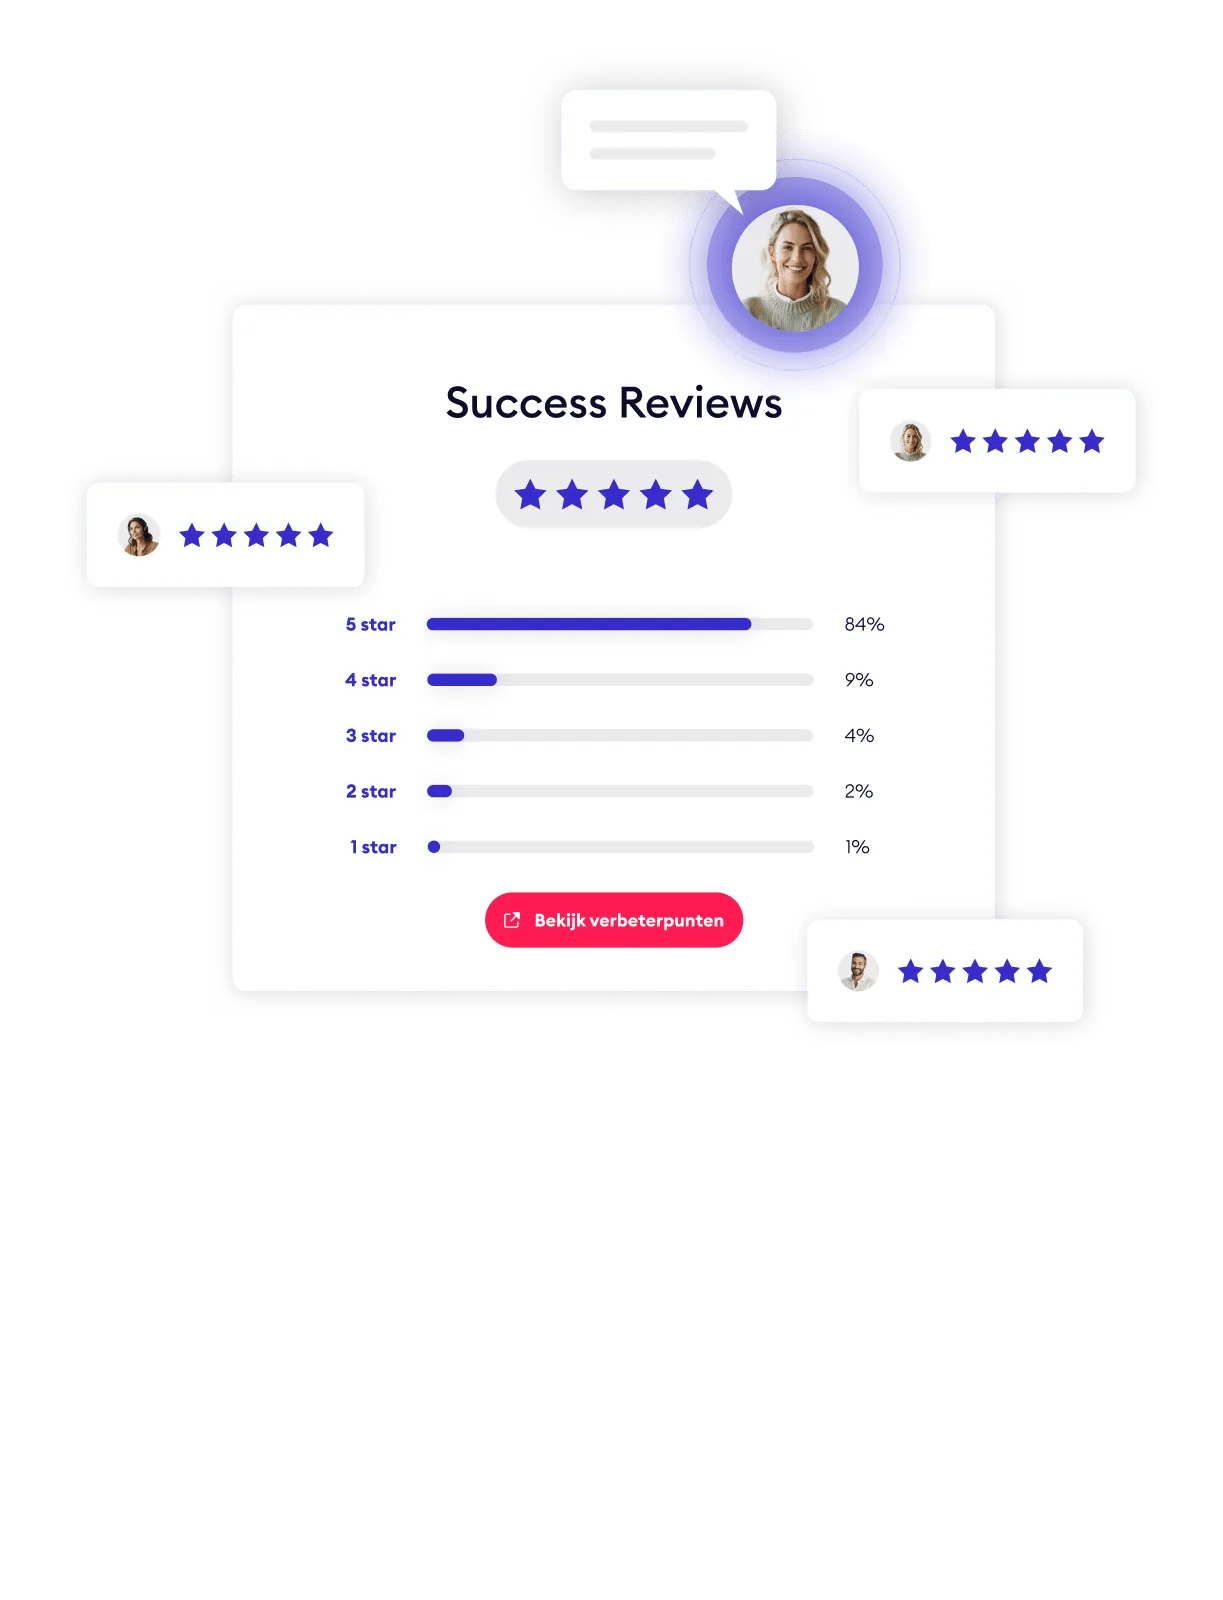 Customer Success - Tab 3